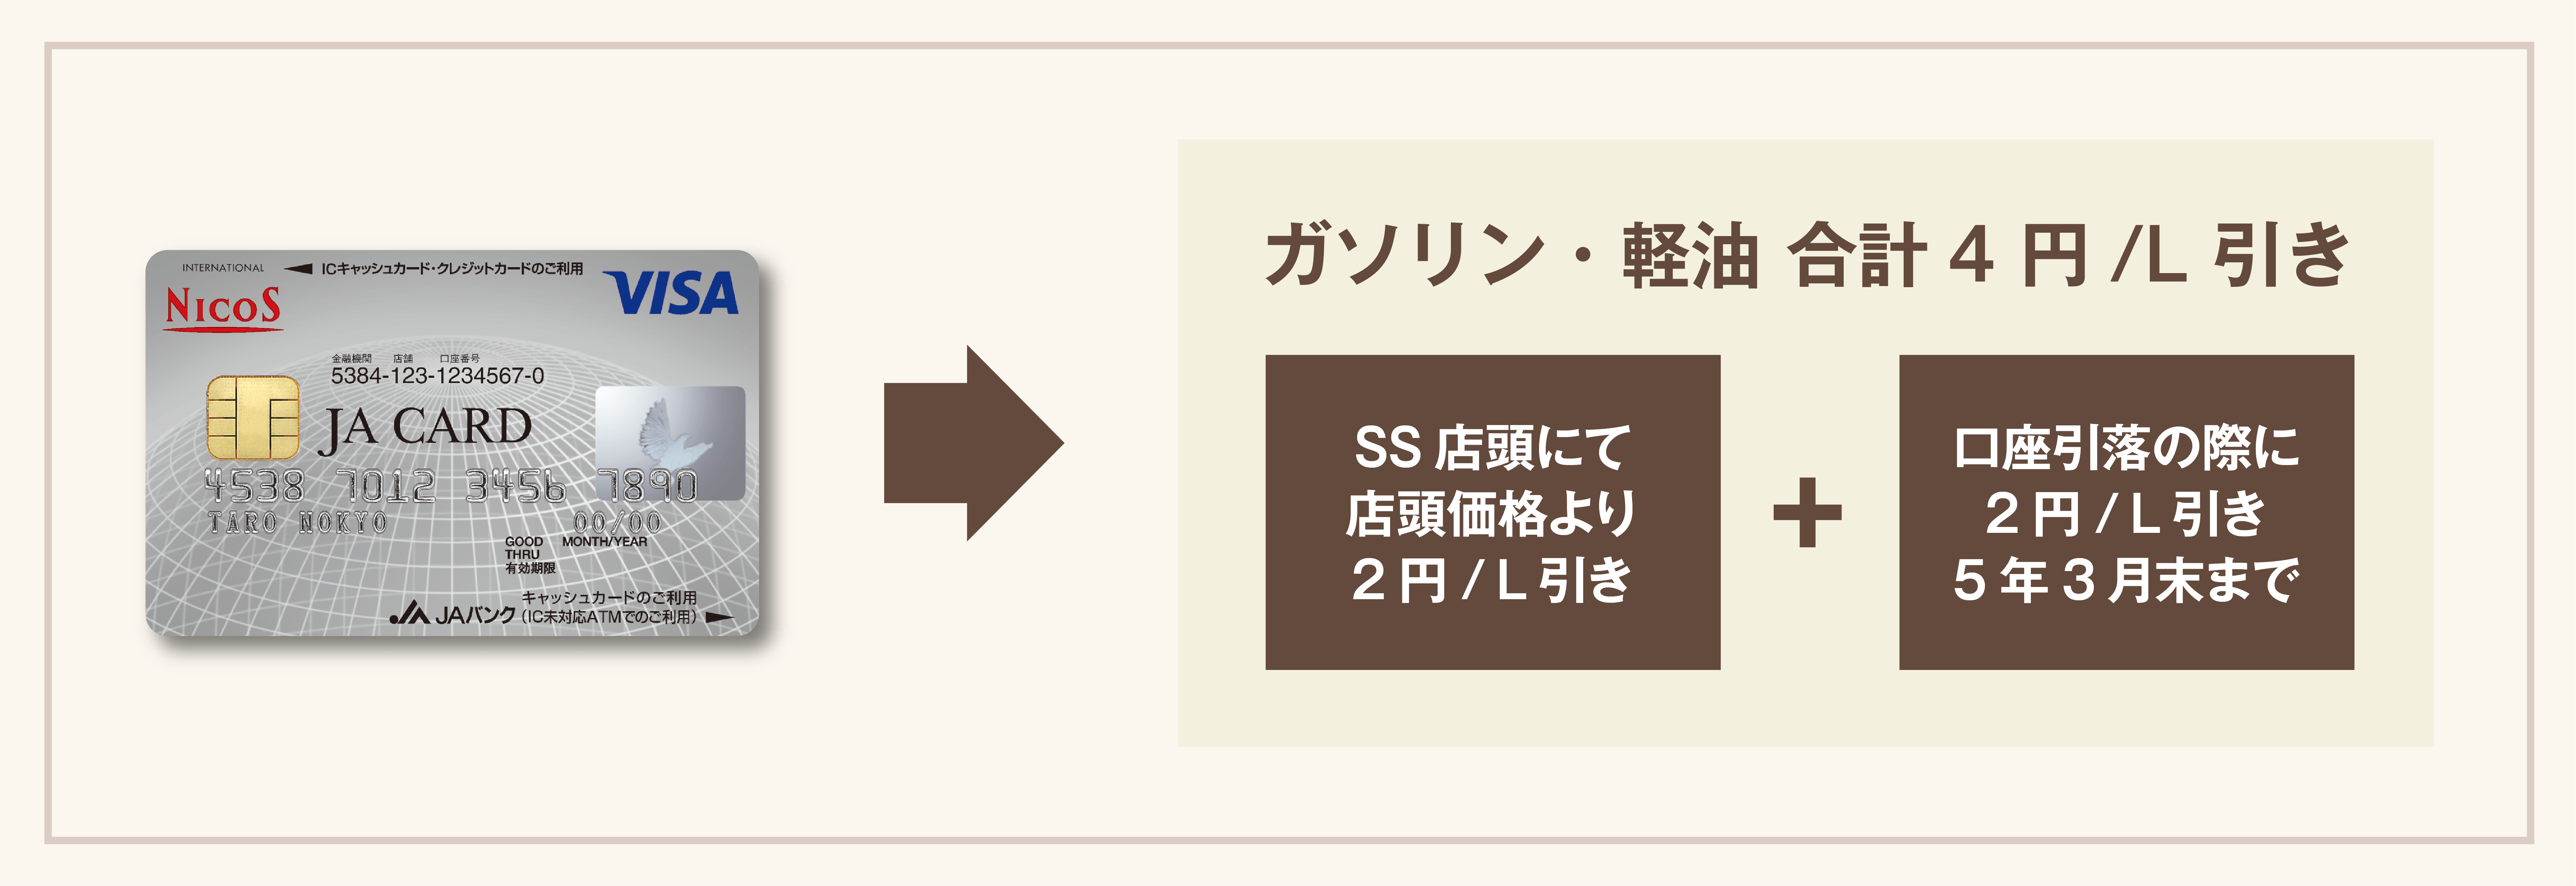 ガソリン4円/L引き